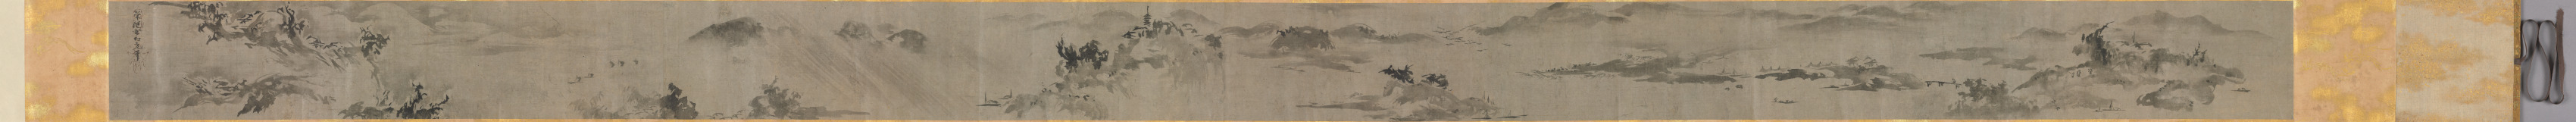 Eight Views of Xiao-Xiang